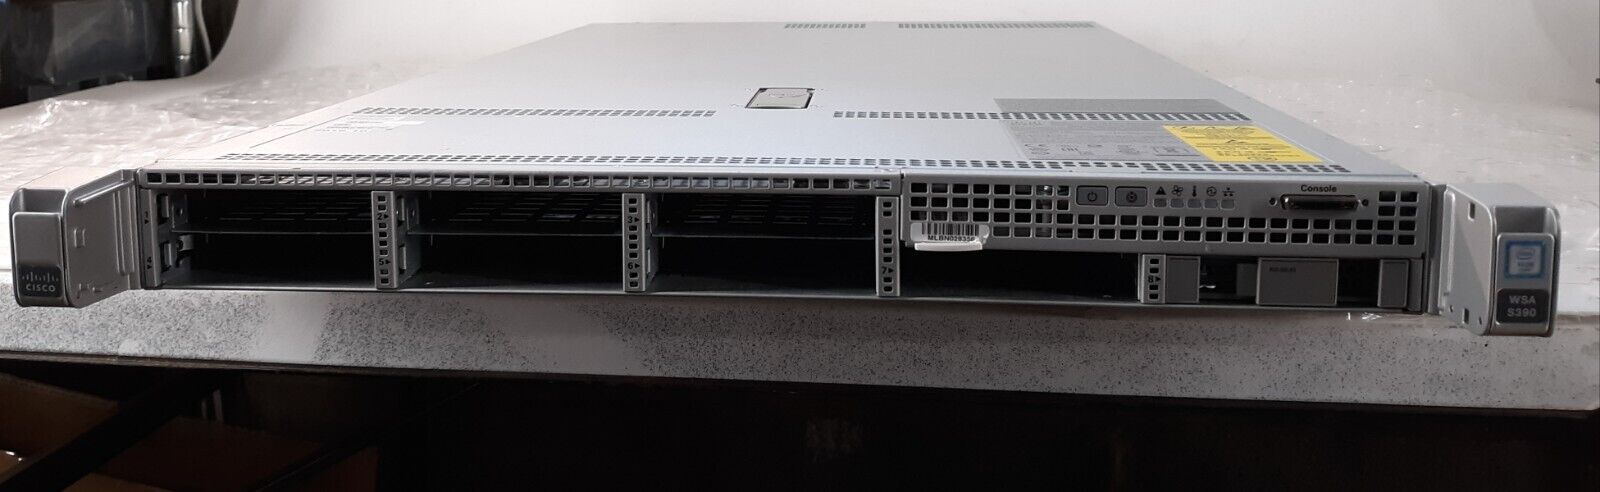 Cisco UCS C220 M4 S390 V01 Server 1x Intel Xeon E5-2620 V3 NO RAM + HDD w/ 2PSU